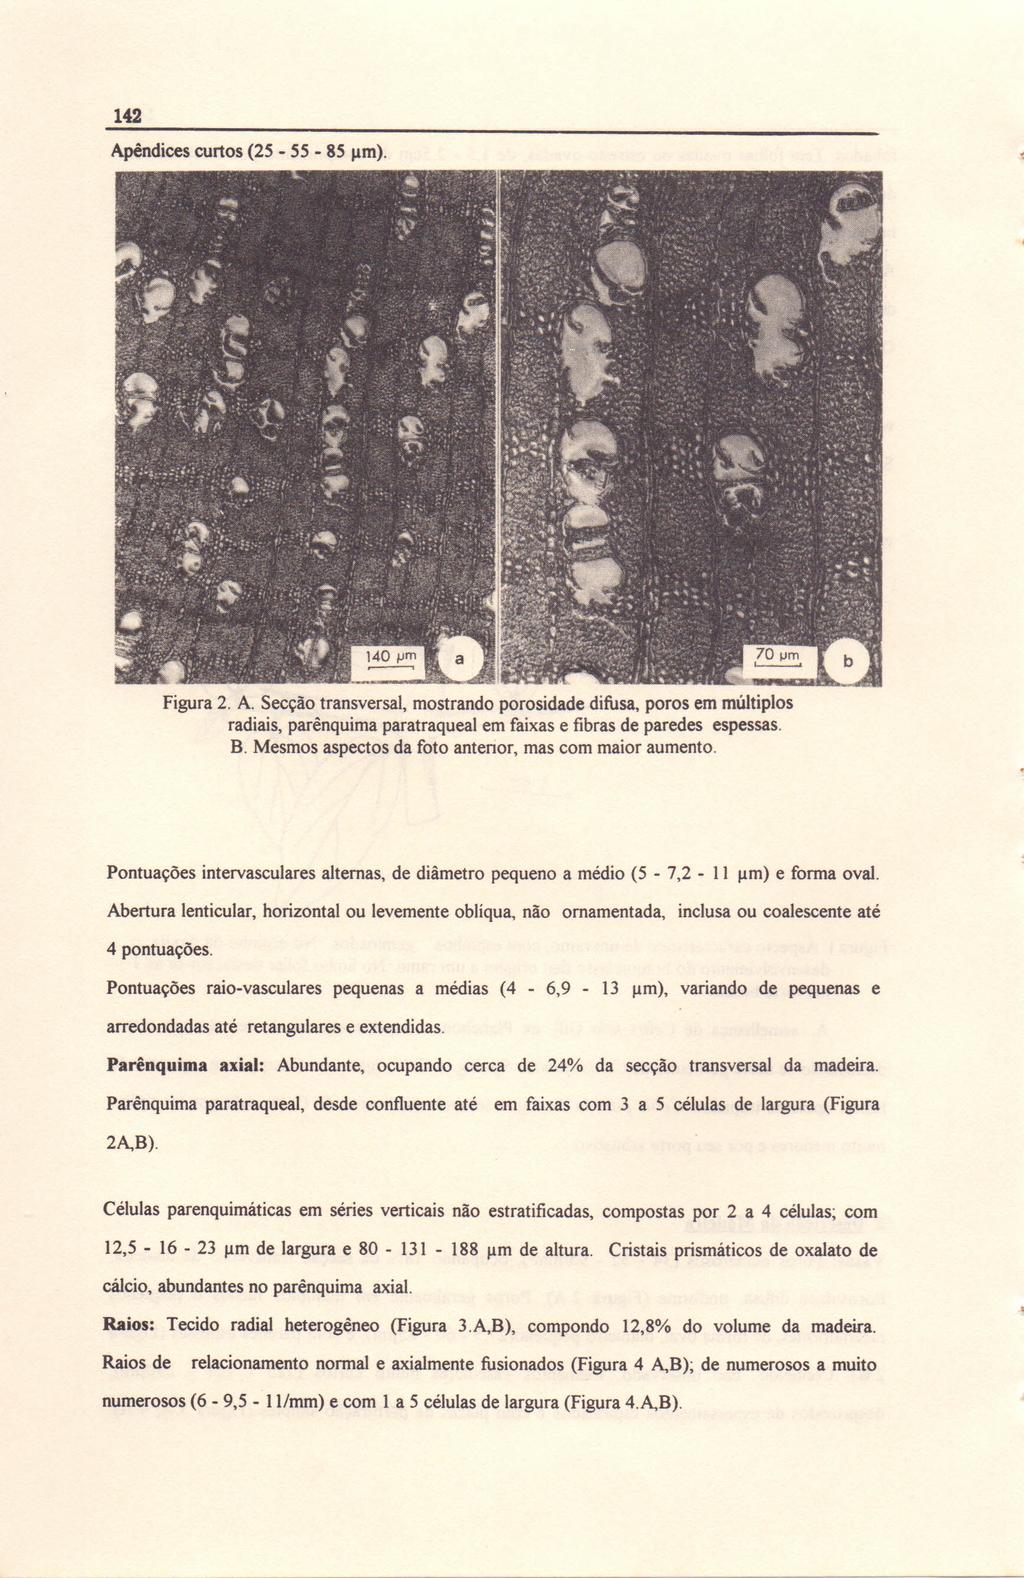 142 Apêndices curtos (25-55 - 85 11m). Figura 2. A. Secção transversal, mostrando porosidade difusa, poros em múltiplos radiais, parênquima paratraqueal em faixas e fibras de paredes espessas. B.